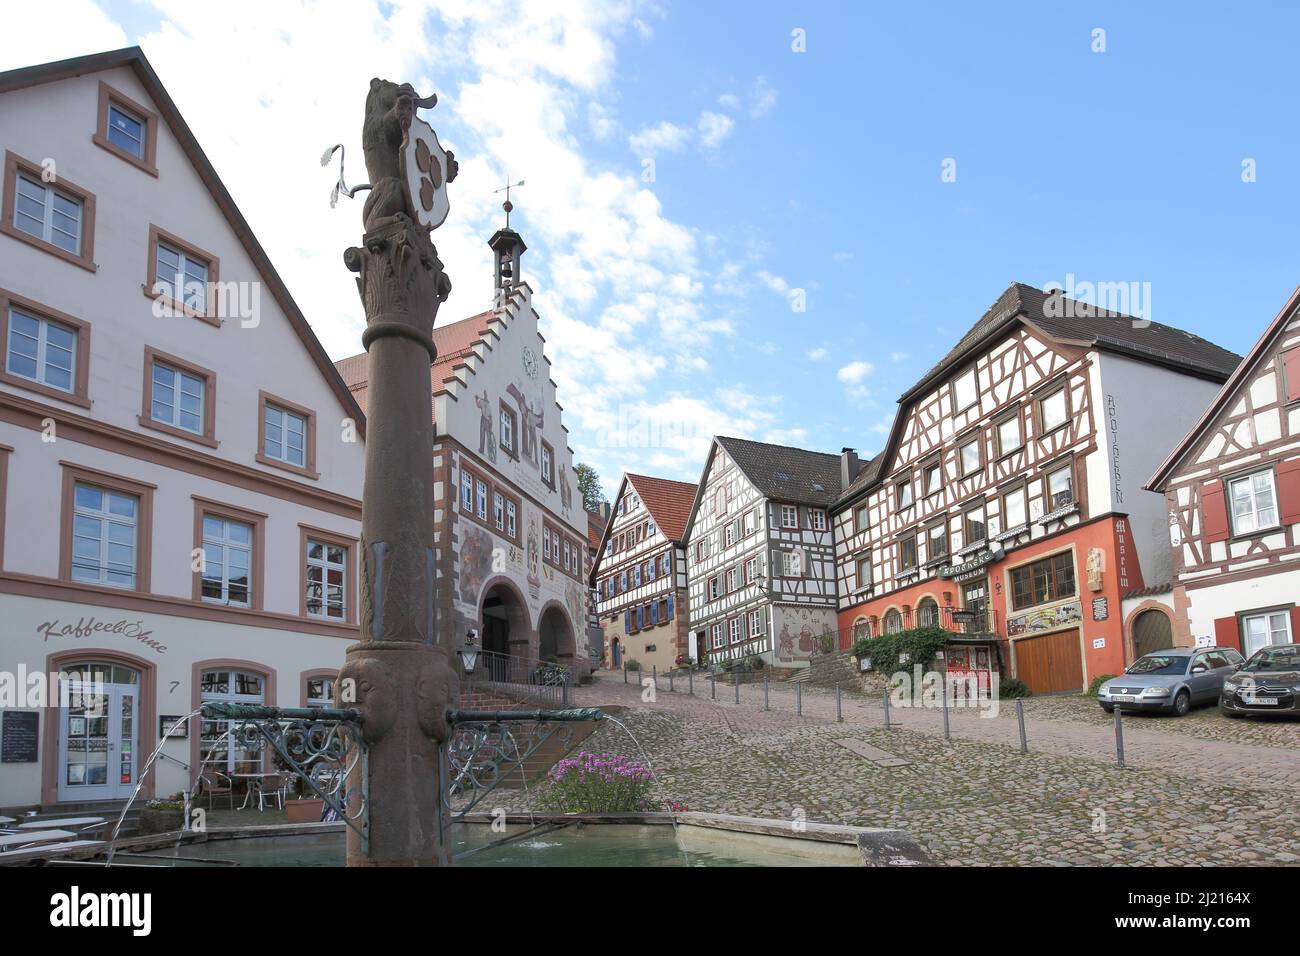 Marktbrunnen auf dem Marktplatz in Schiltach, Baden-Württemberg, Deutschland Stockfoto